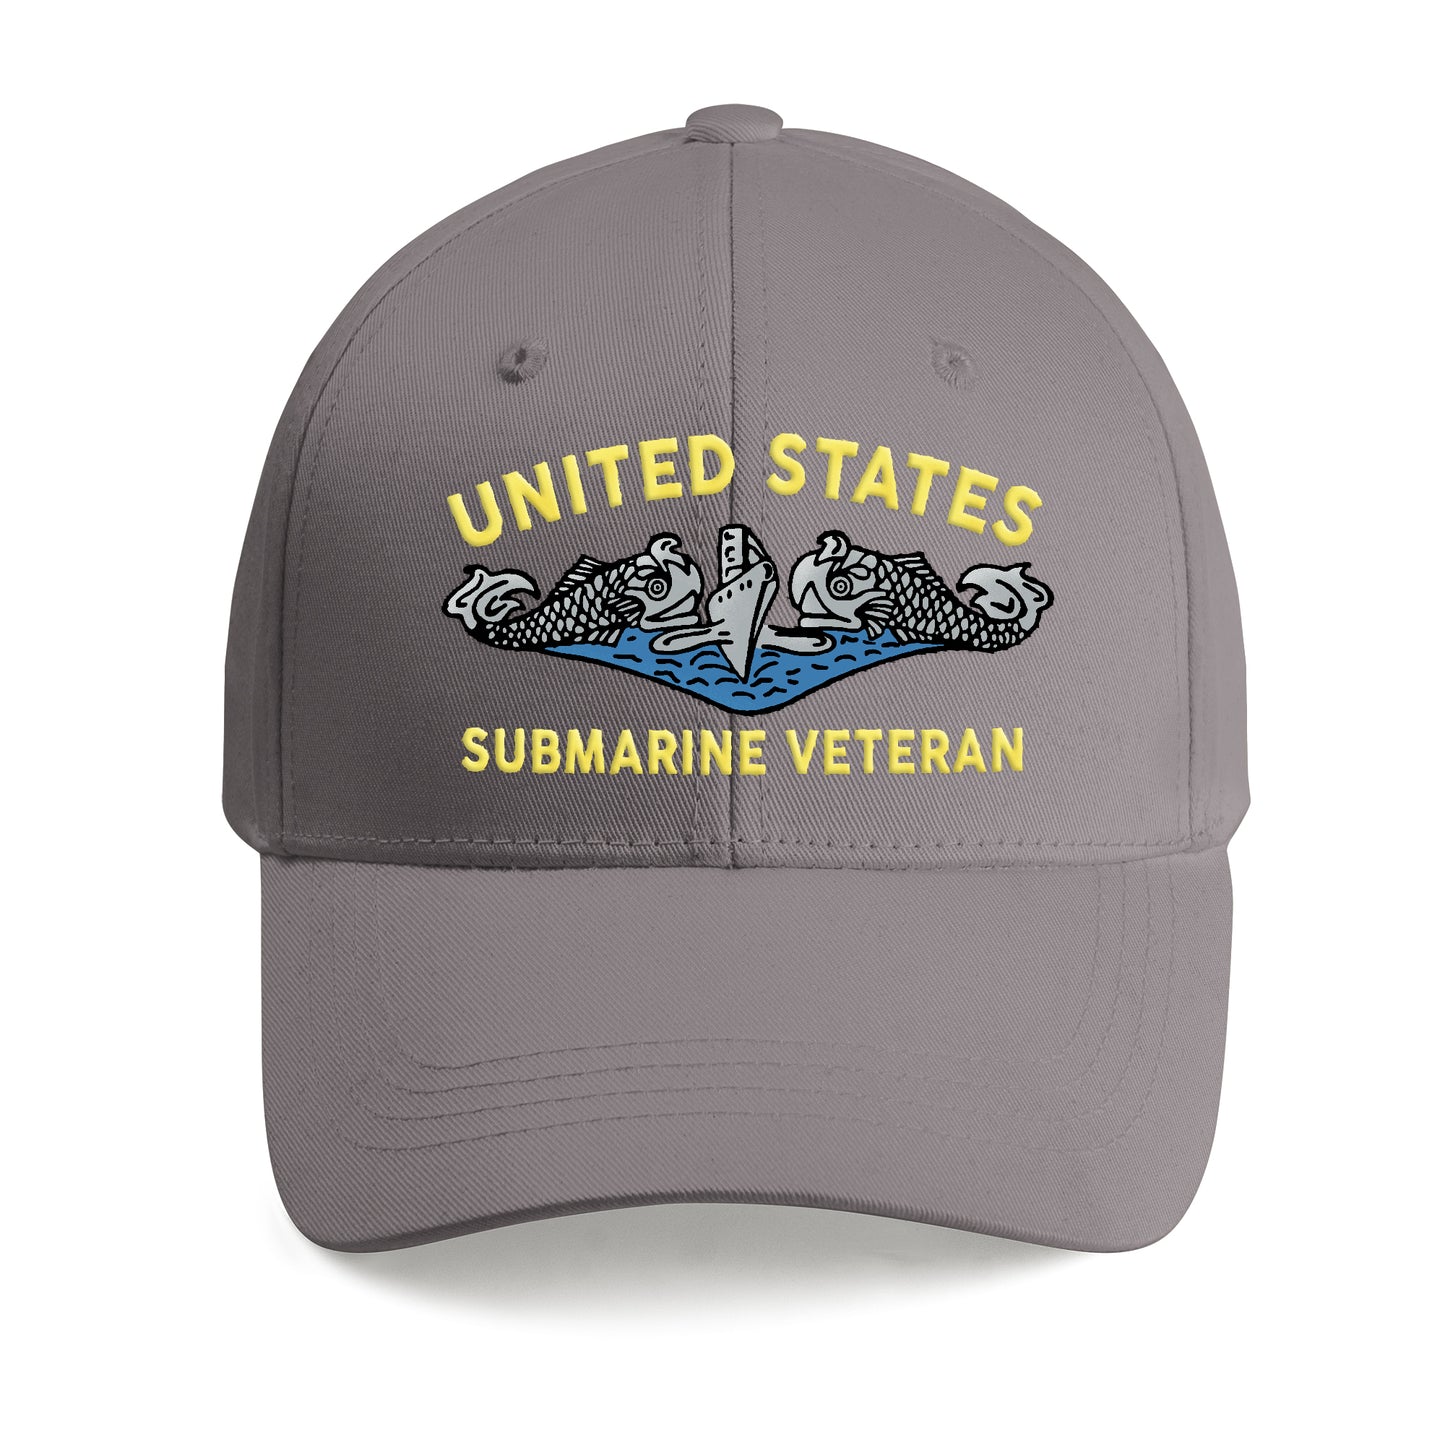 U.S. Submarine Veteran Embroidered Cap